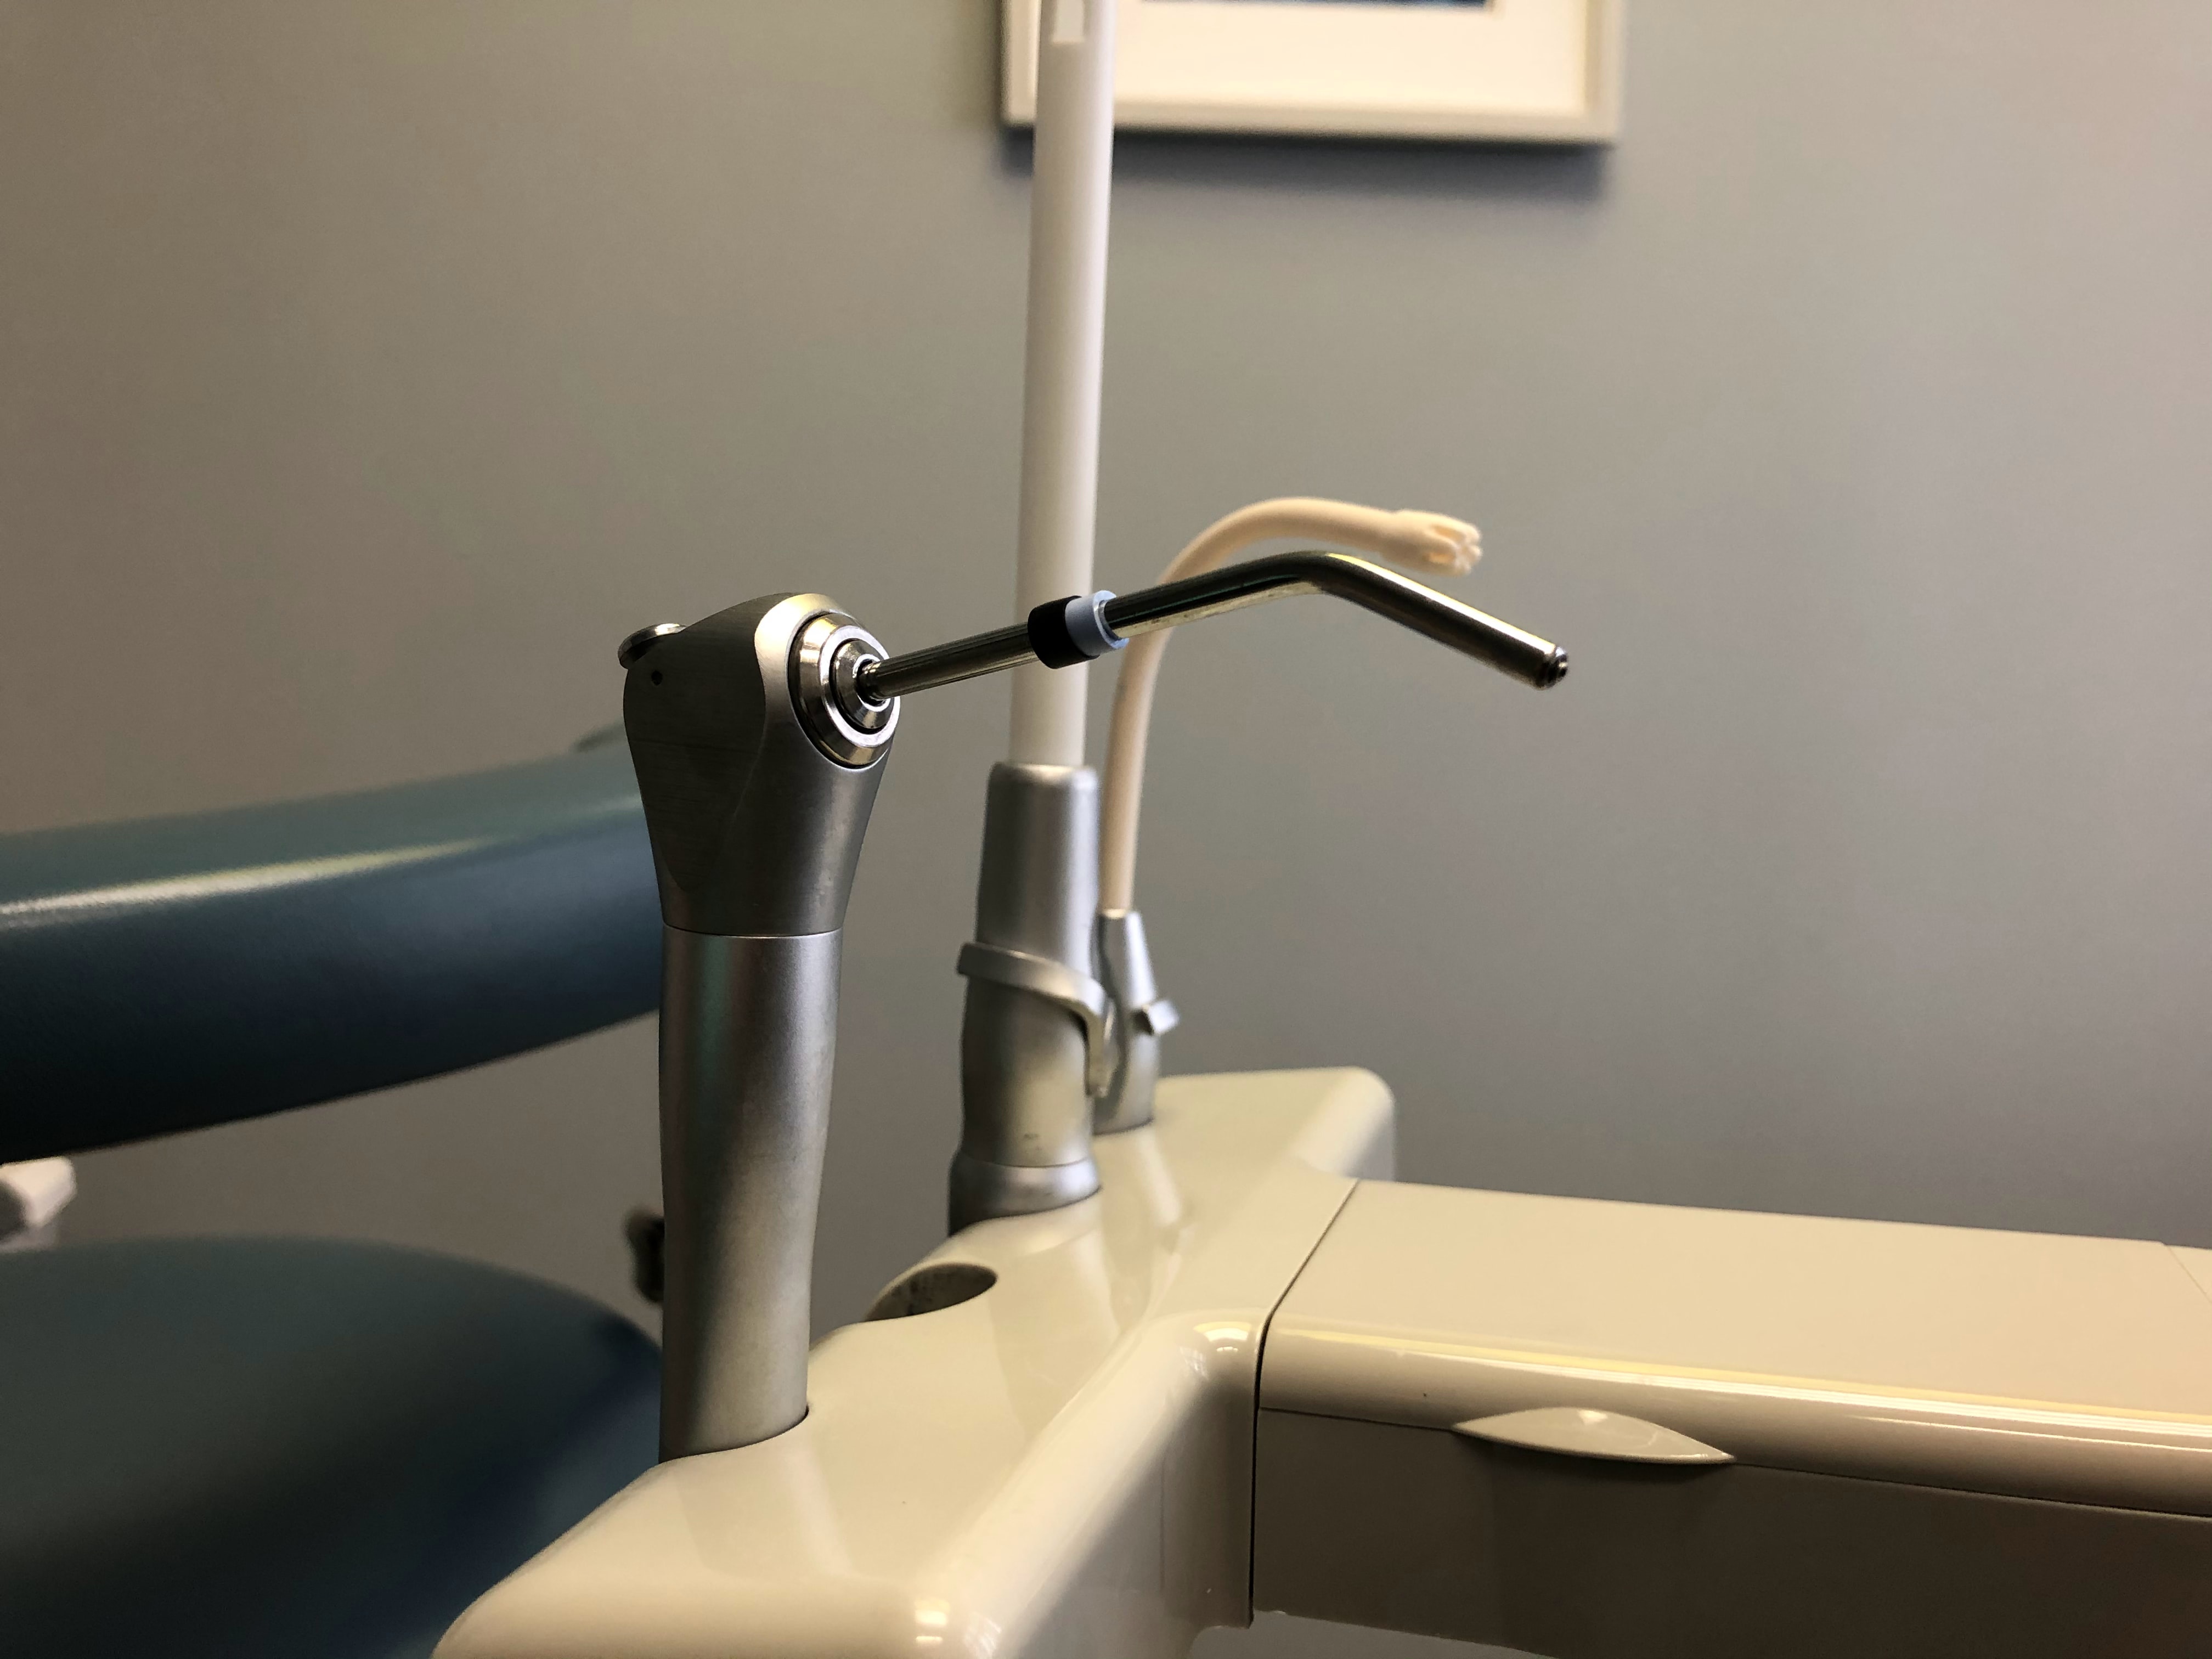 cavity fillings in erie pa. dental office